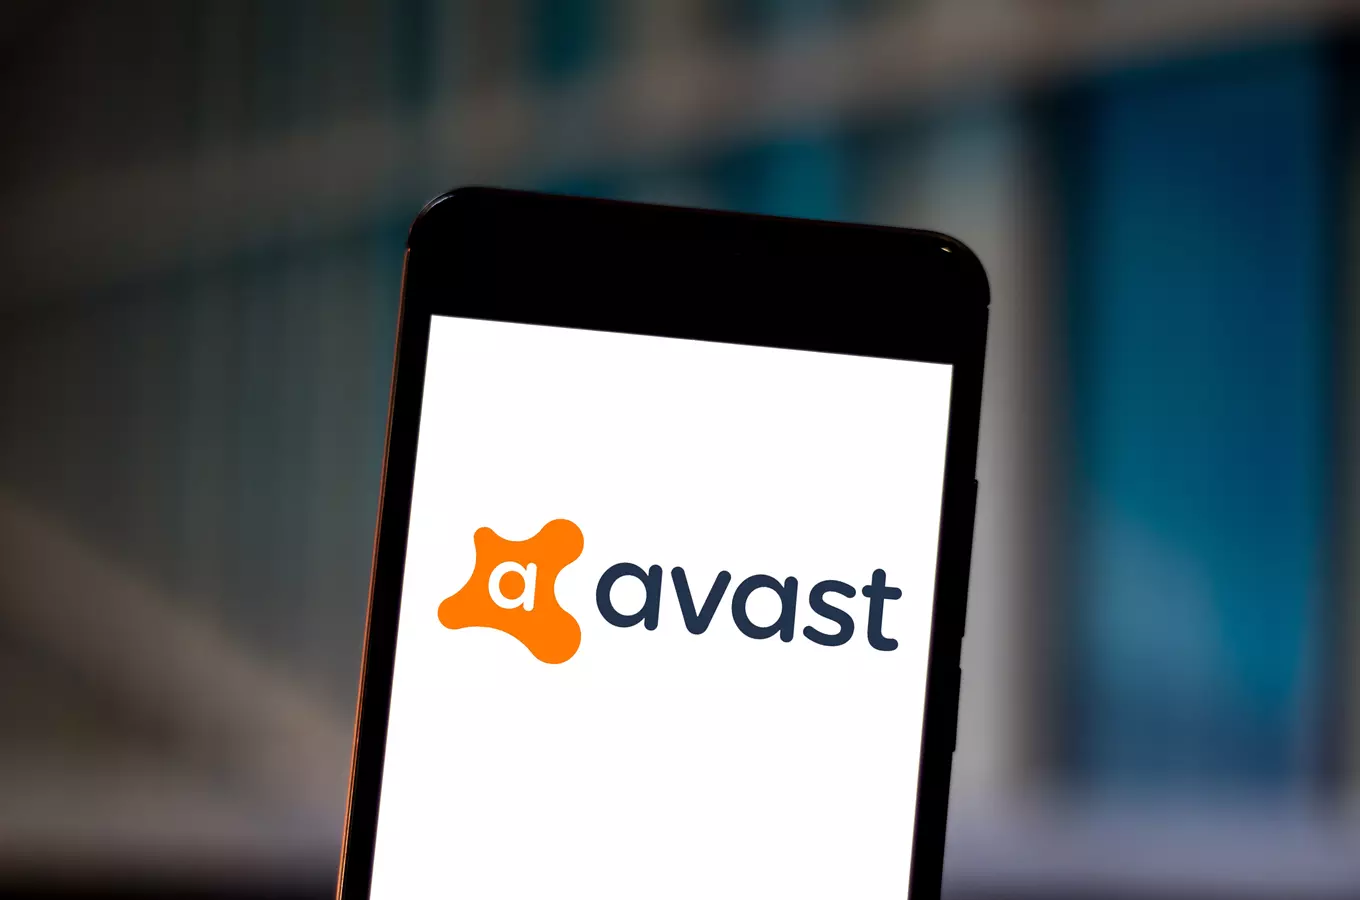 České značky: společnost Avast a české Silicon Valley